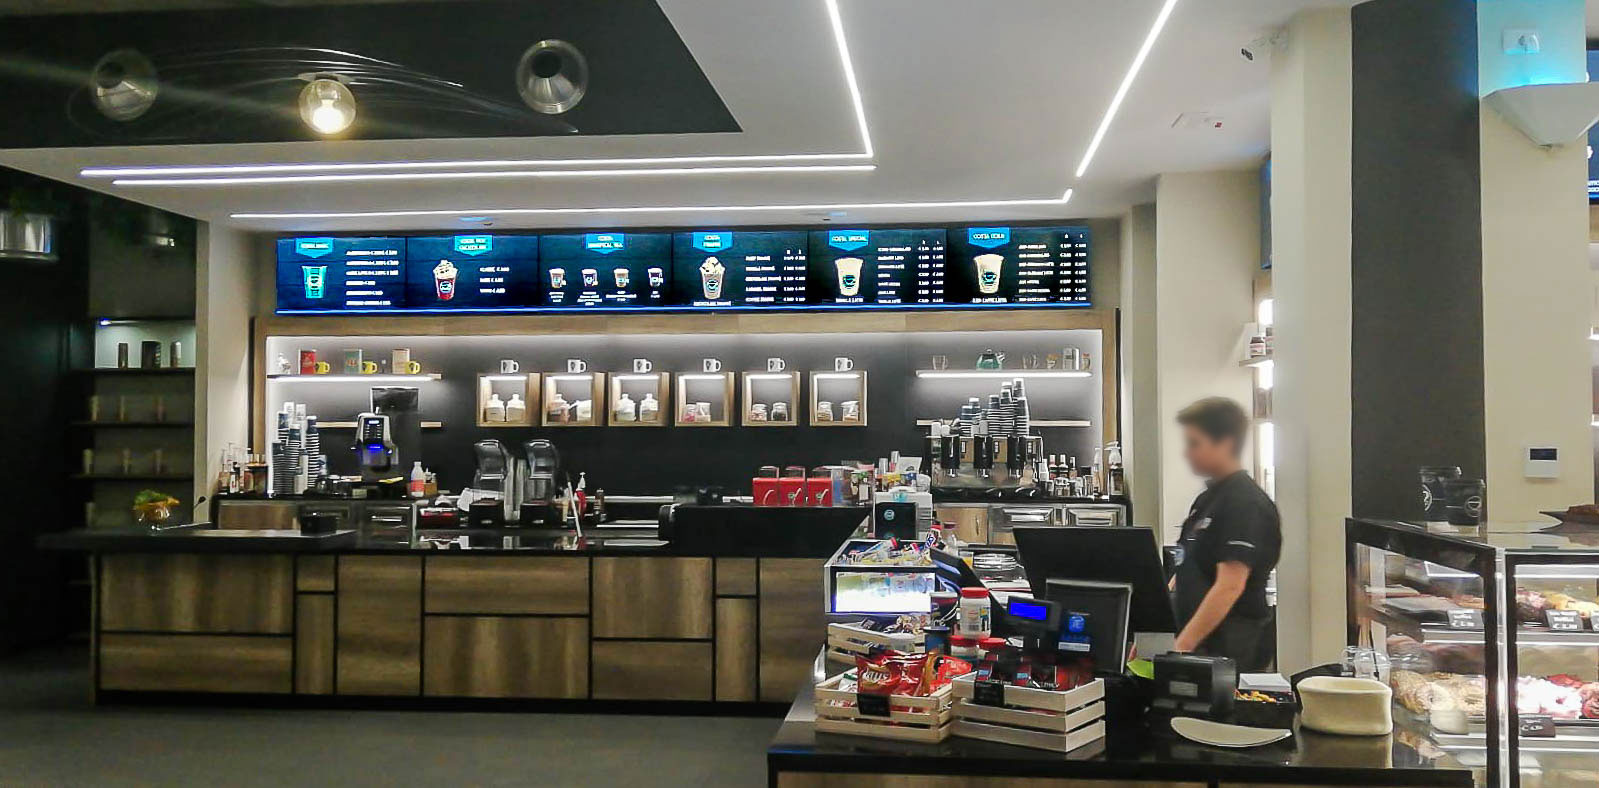 Videowall Samsung Smart Signage con menu prodotti installati a parete all'interno del bar caffetteria